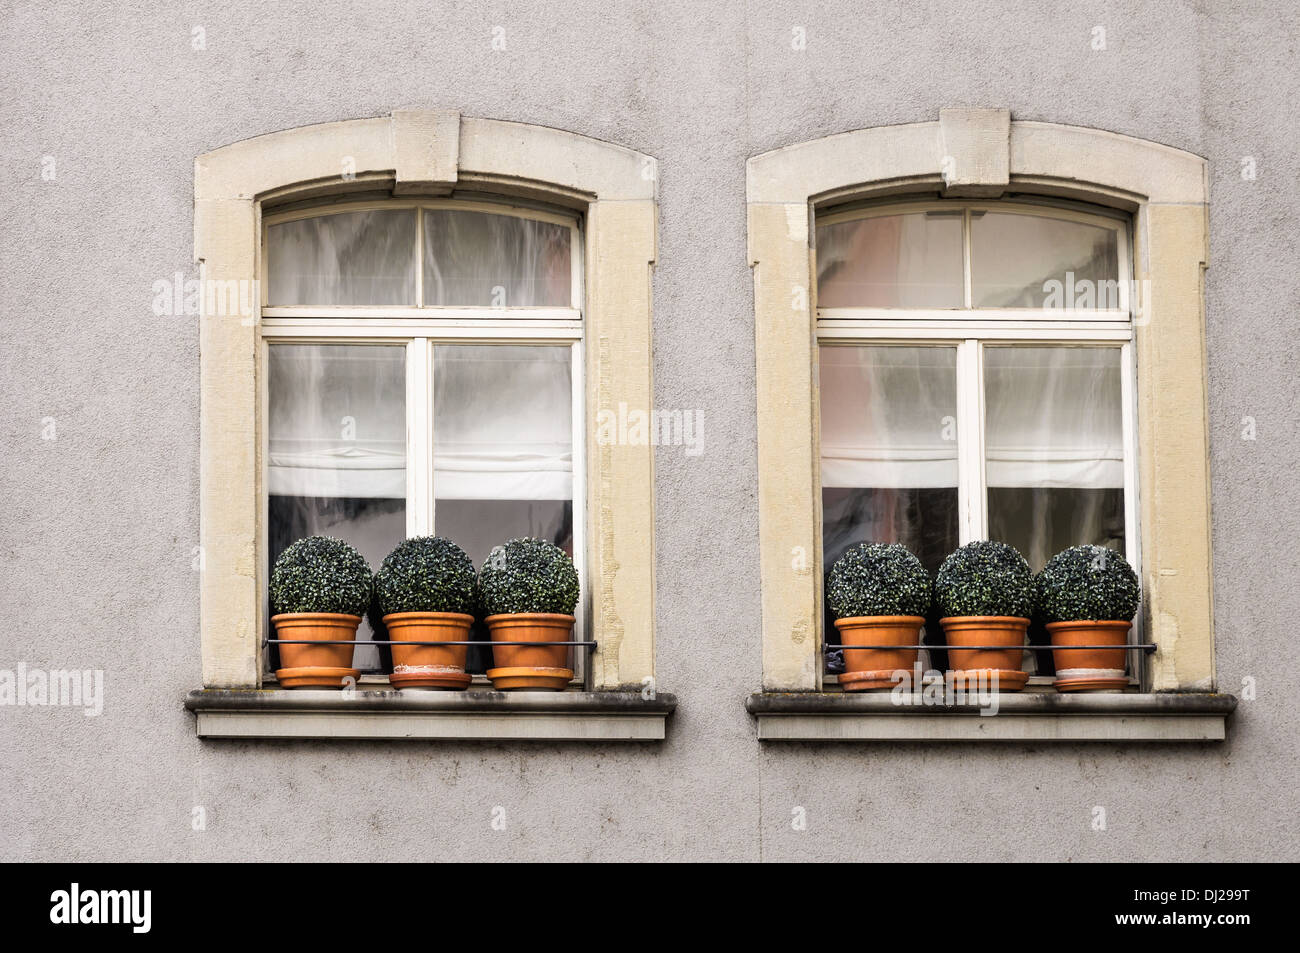 Zurich, Switzerland: Old city center Stock Photo